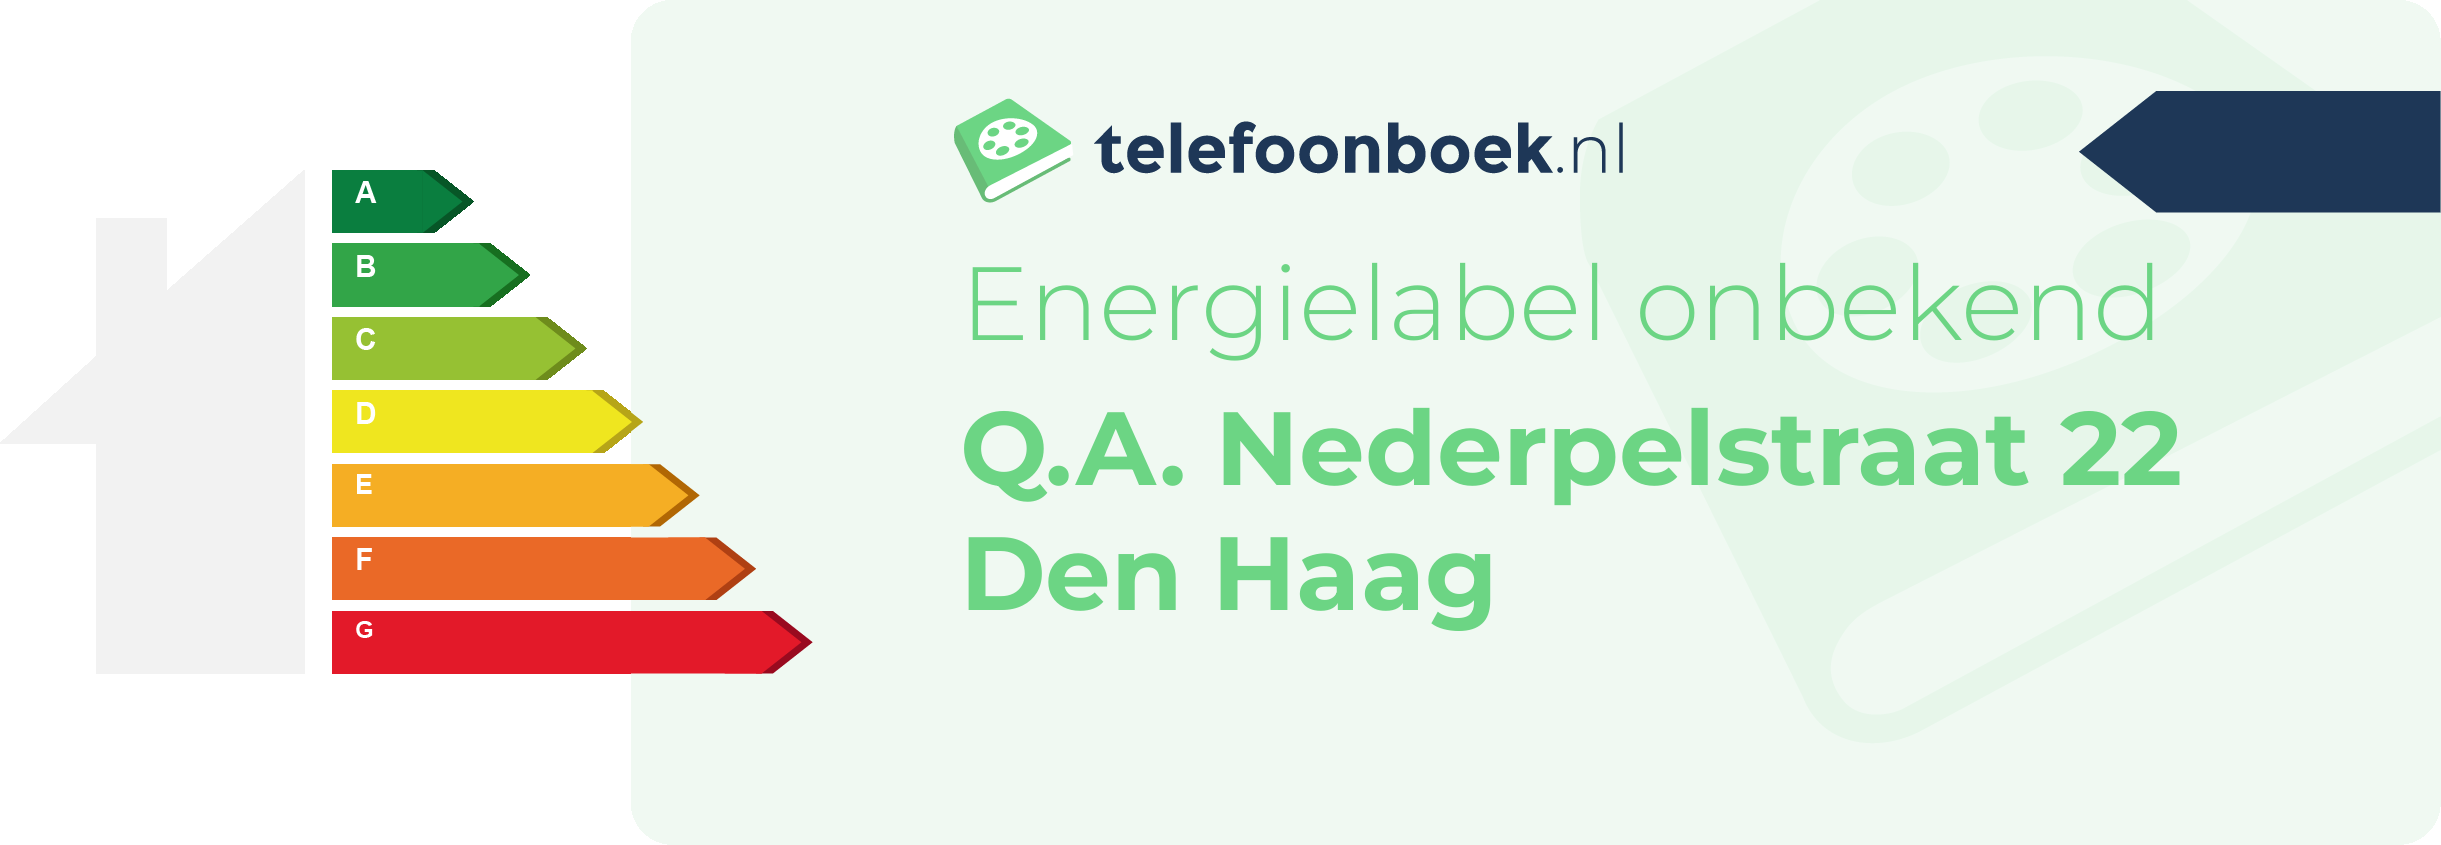 Energielabel Q.A. Nederpelstraat 22 Den Haag